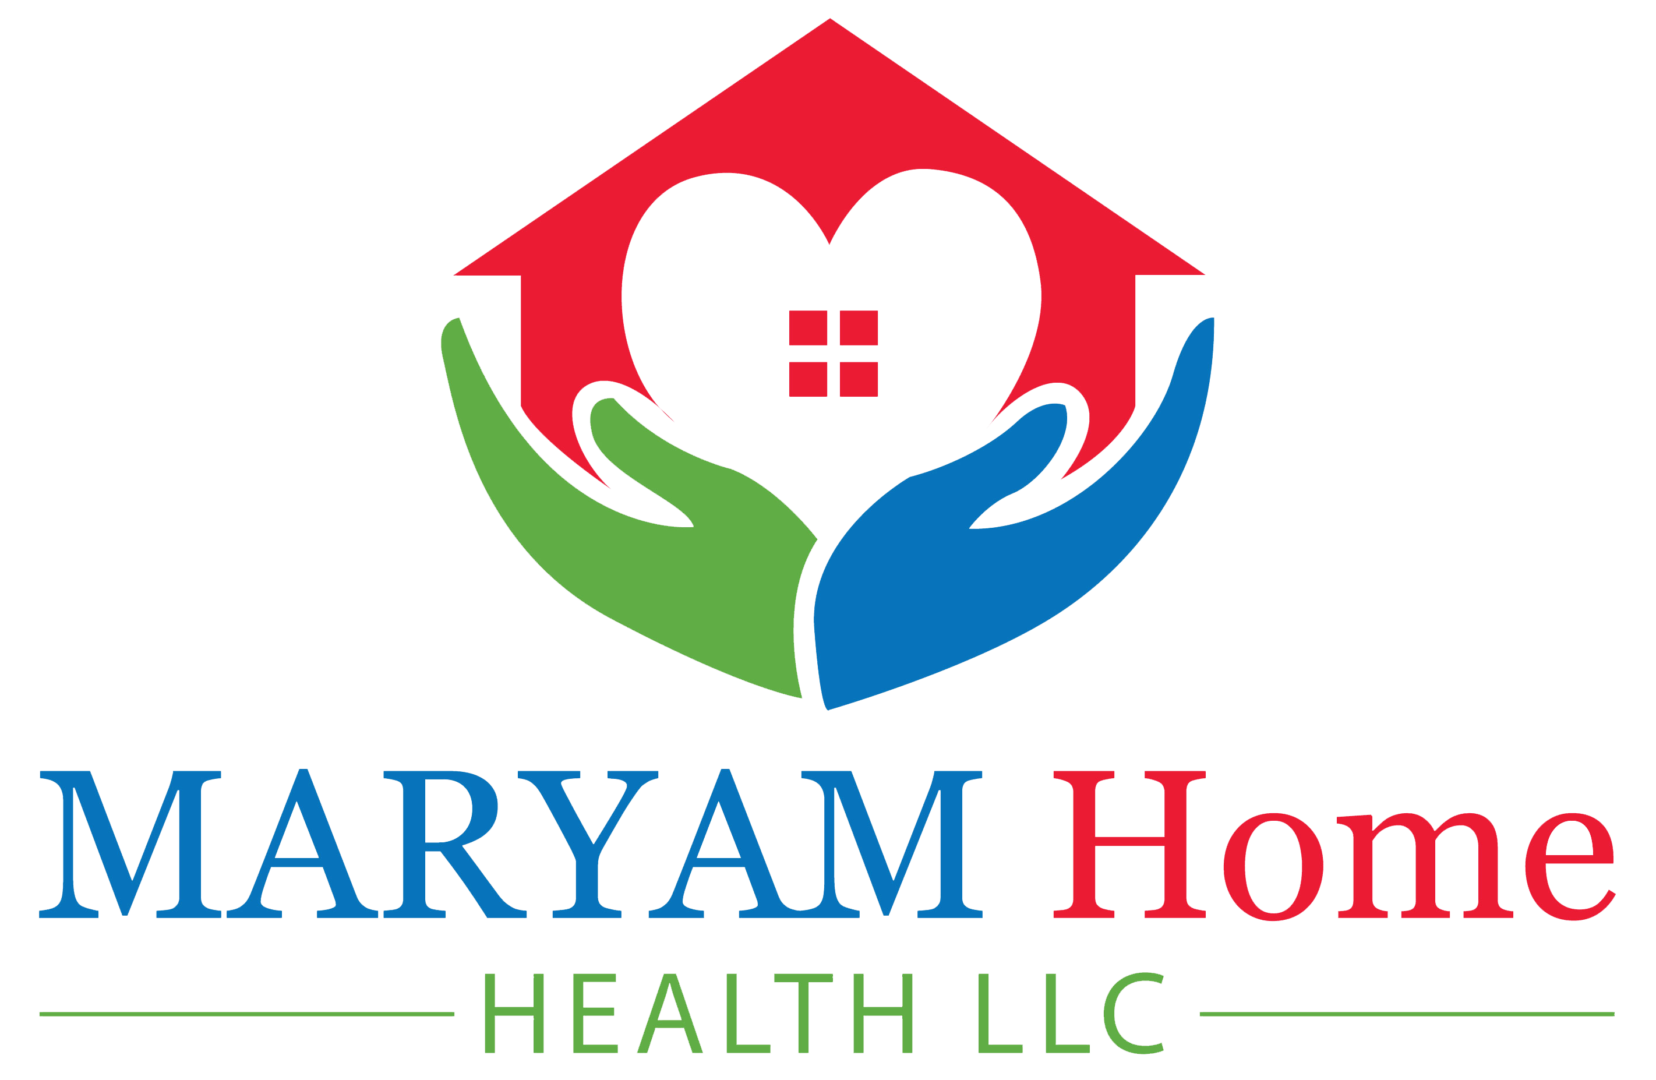 A logo of maryam home health llc